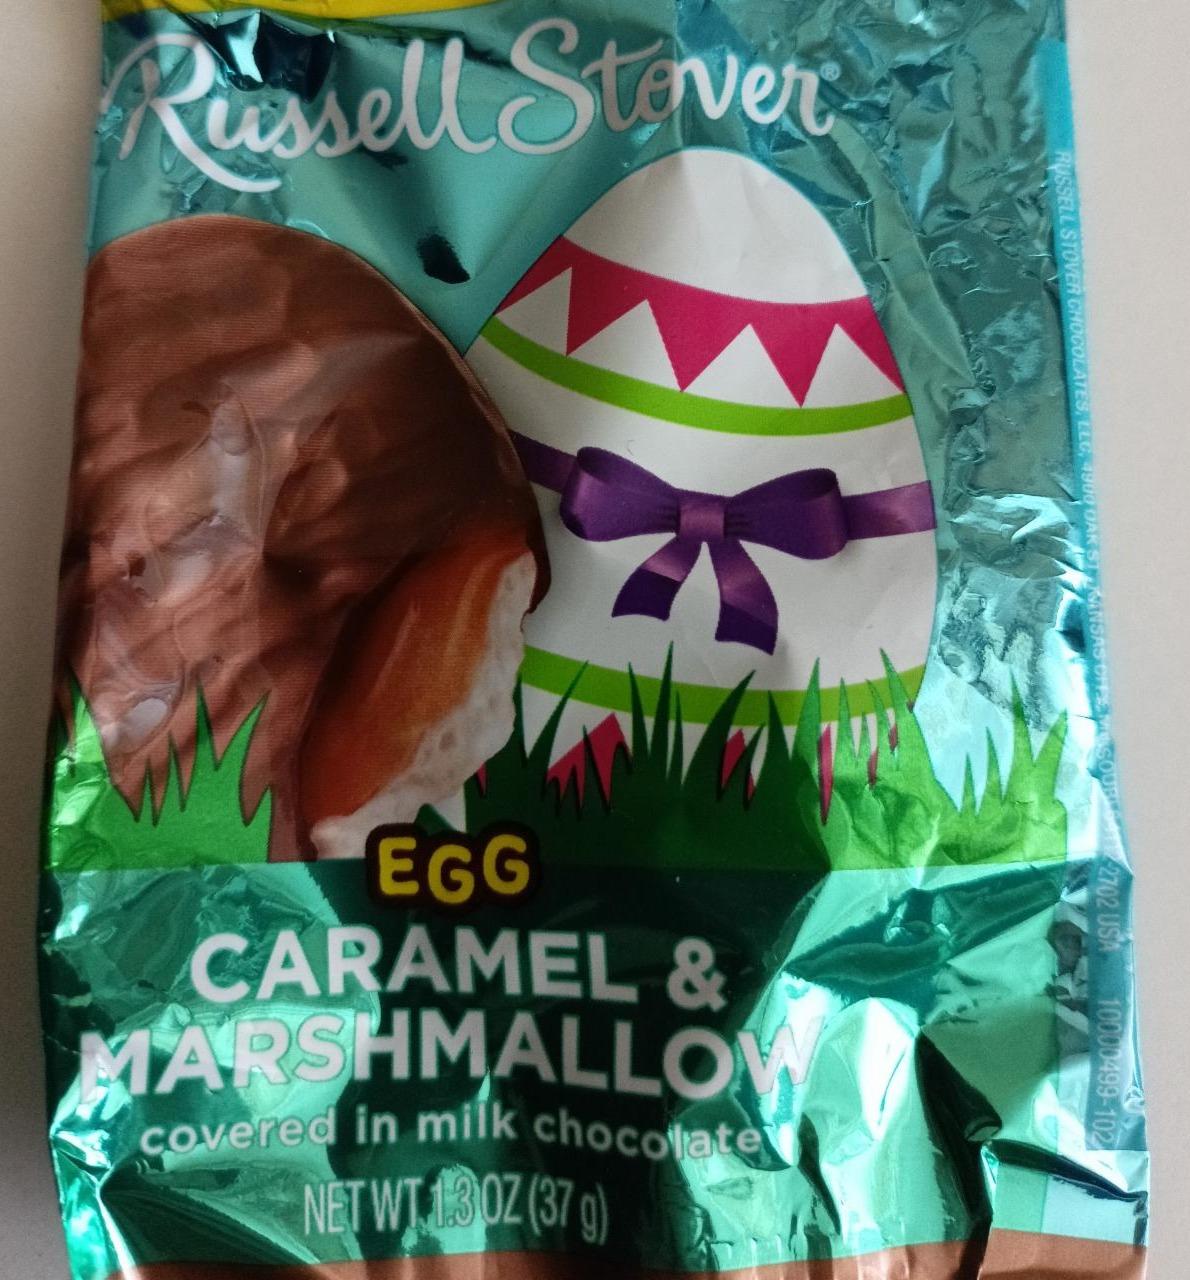 Fotografie - Egg caramel & marshmallow Russell Stover